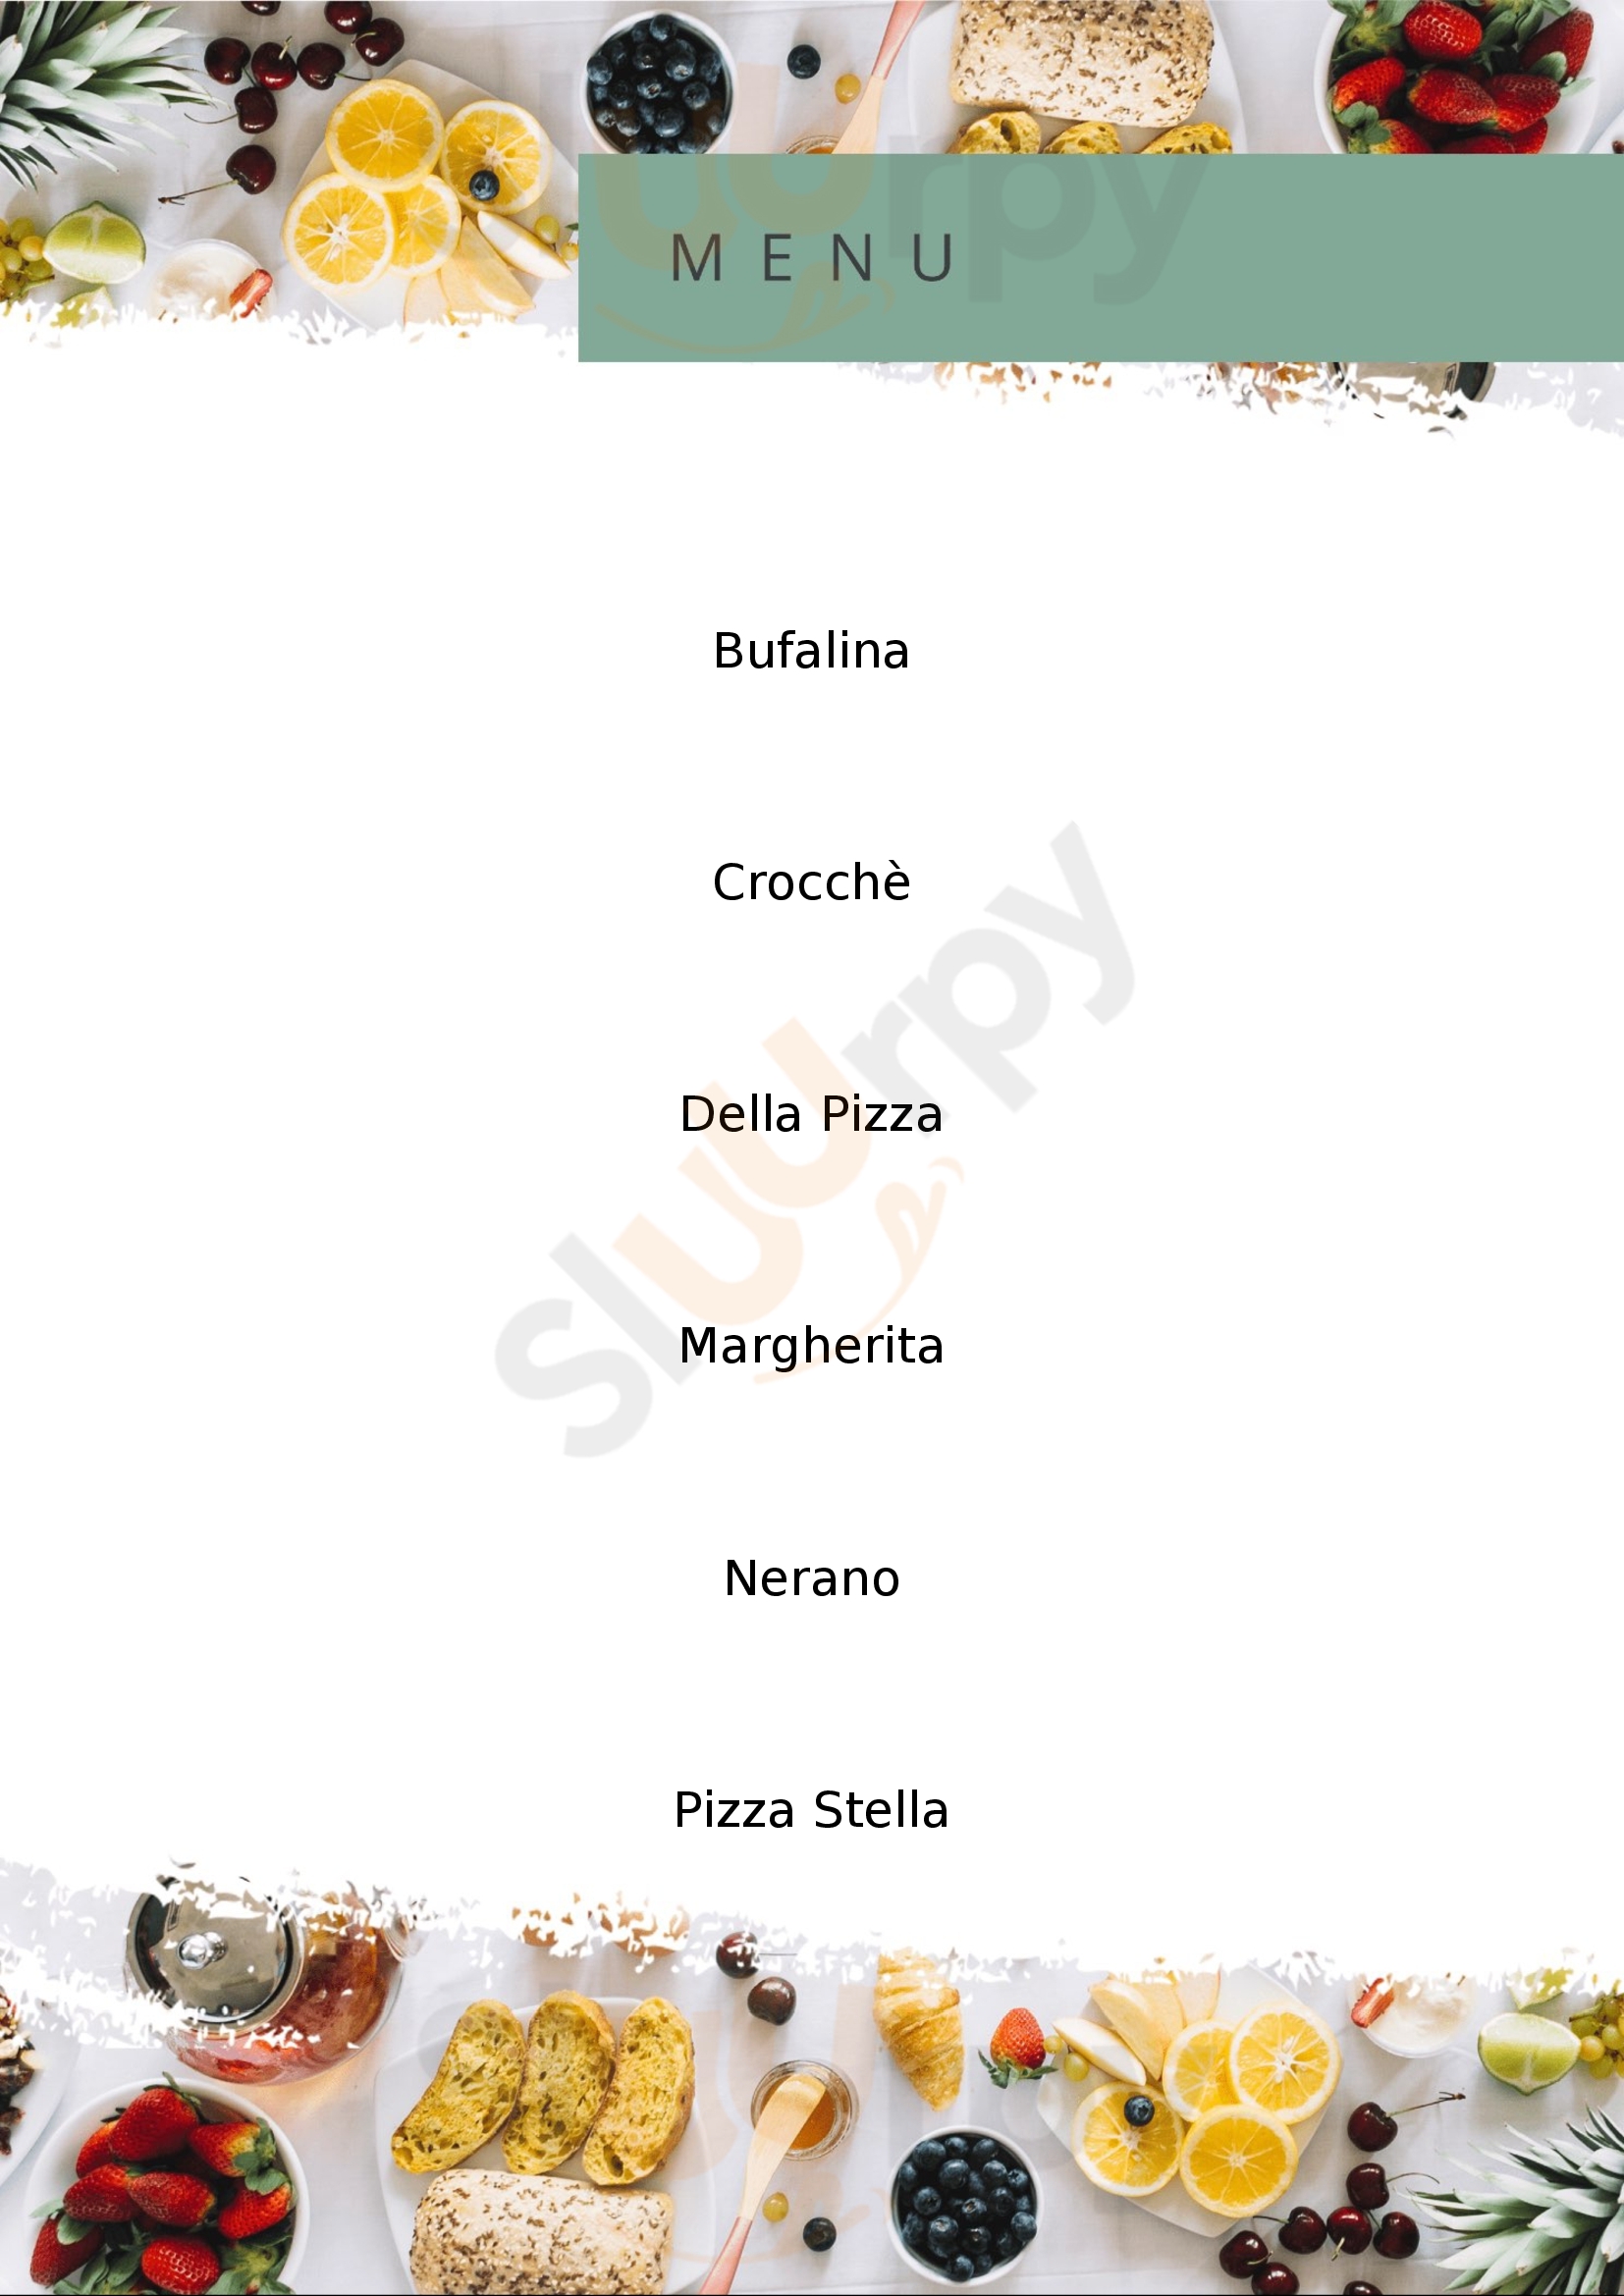 Pizzeria Olio e Pomodoro doc Melito di Napoli menù 1 pagina